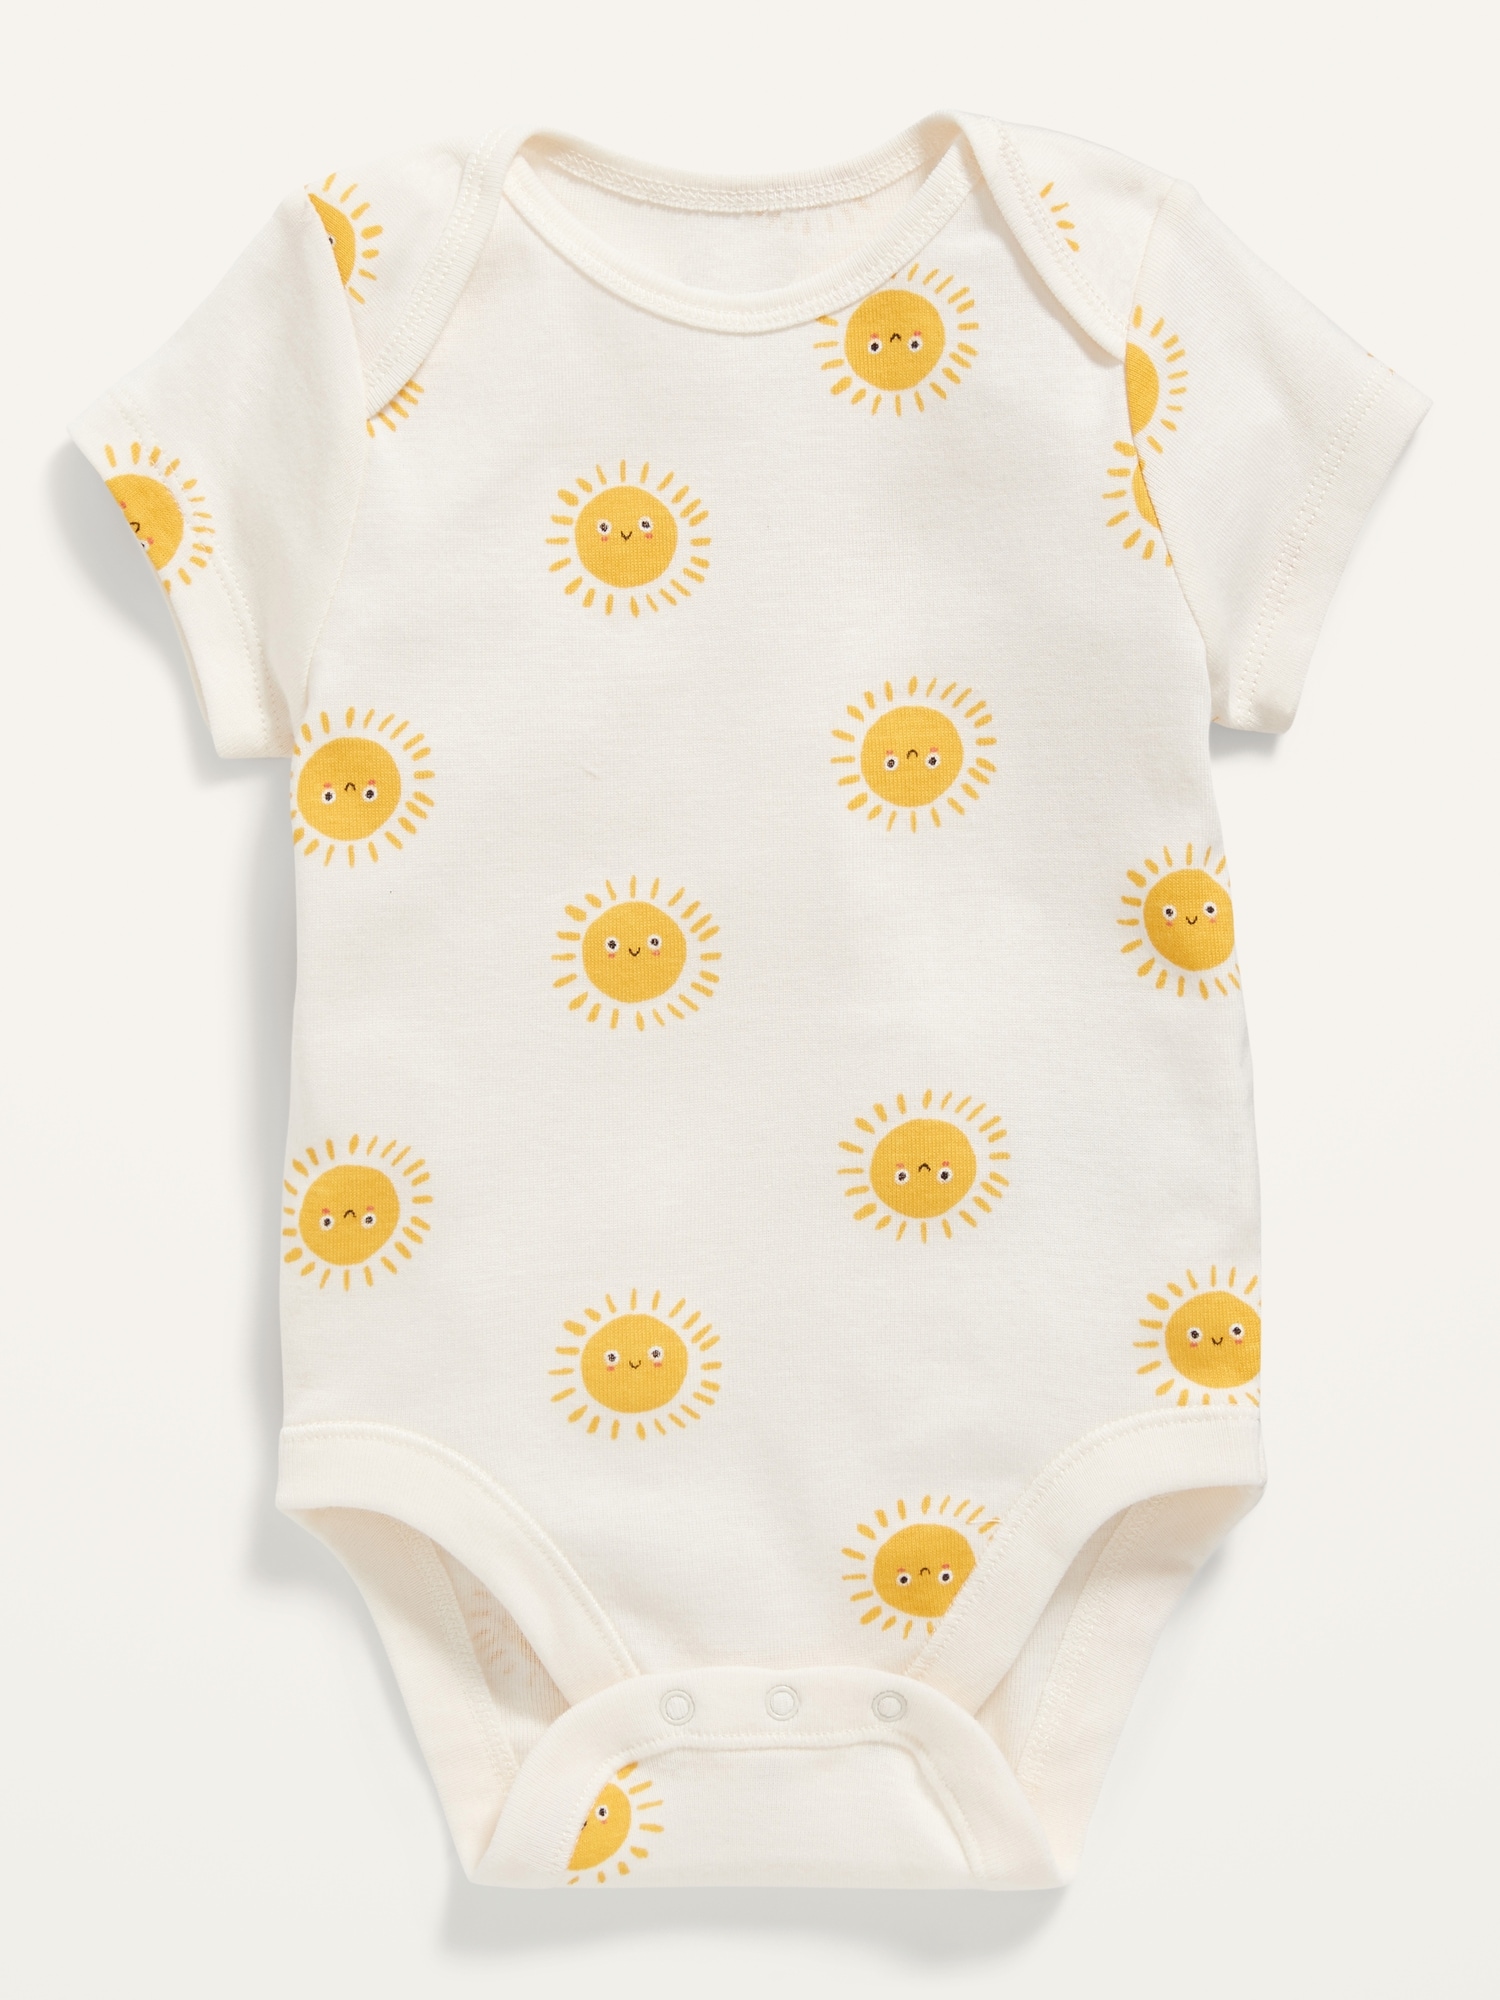 Unisex Sunshine-Print Bodysuit for Baby